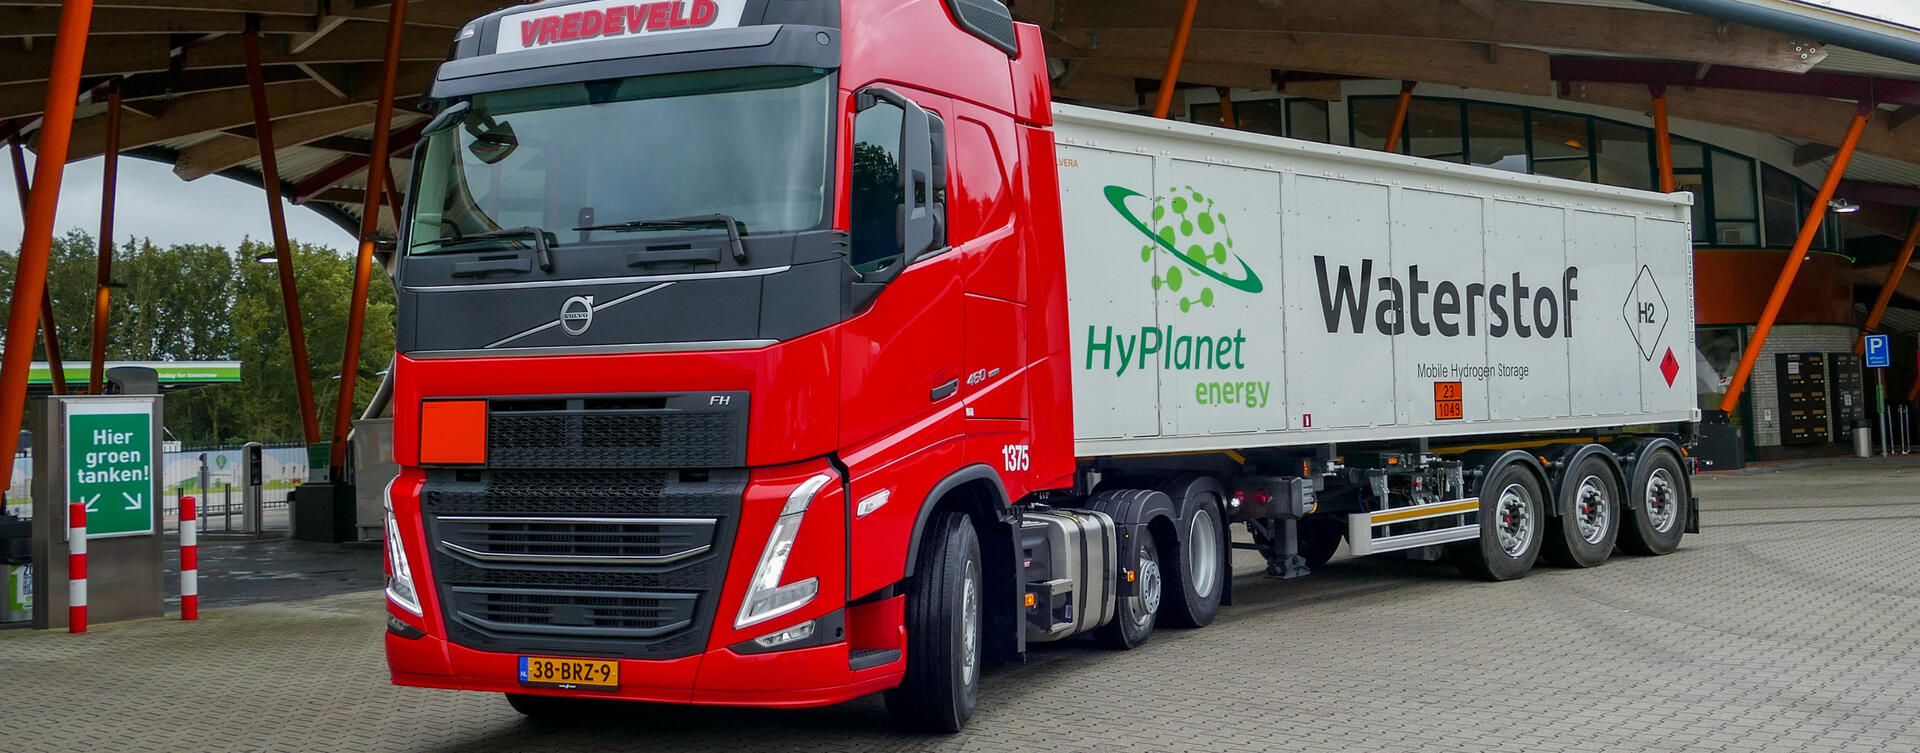 Vredeveld start distributie van waterstof met nieuwe Volvo FH